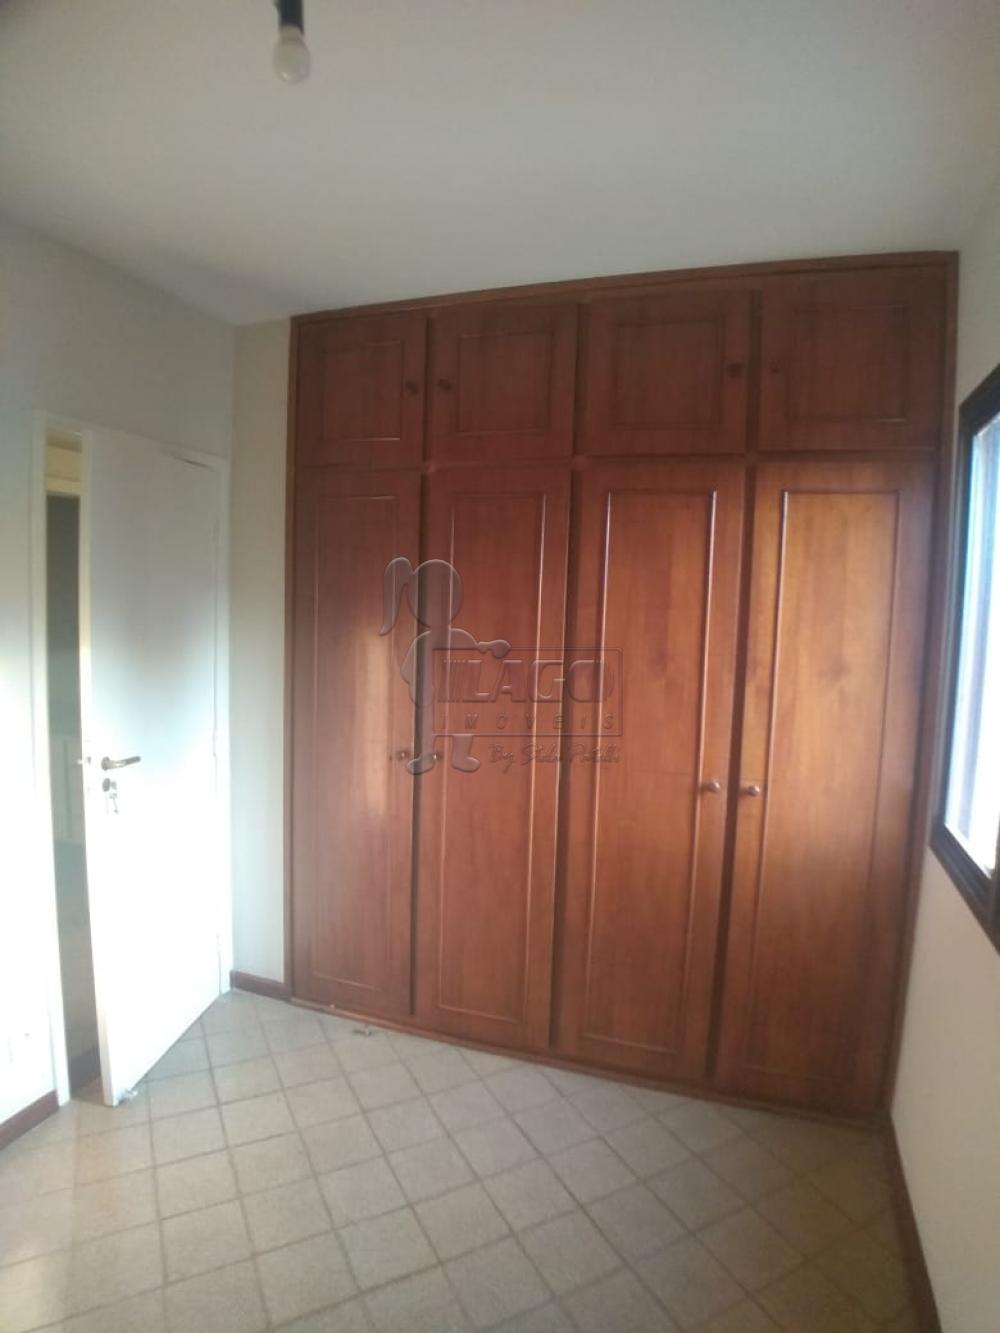 Comprar Apartamentos / Padrão em Ribeirão Preto R$ 405.000,00 - Foto 11